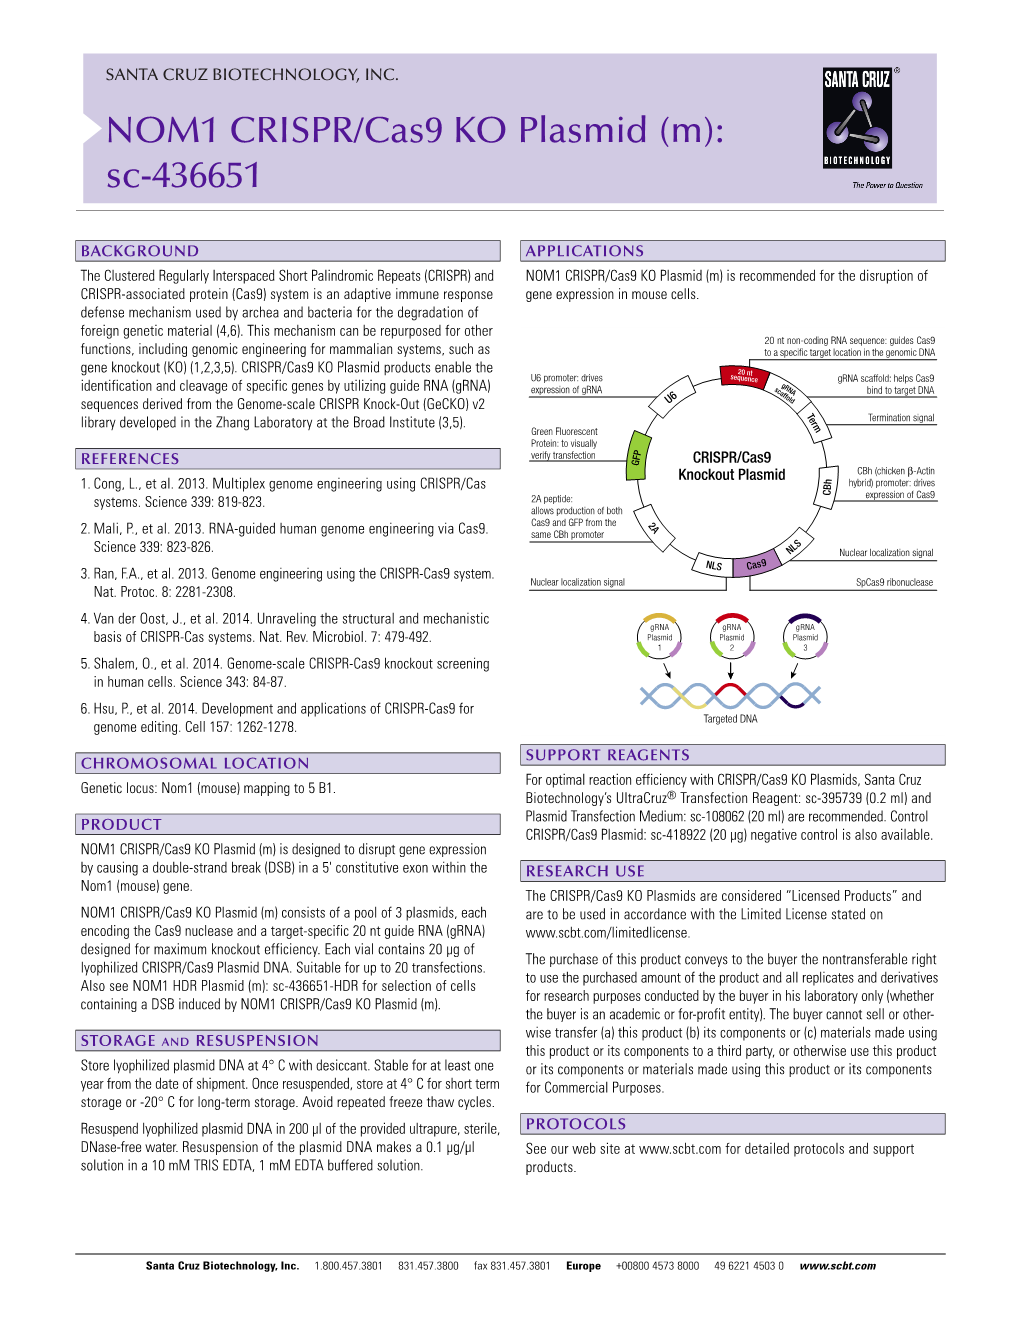 NOM1 CRISPR/Cas9 KO Plasmid (M): Sc-436651